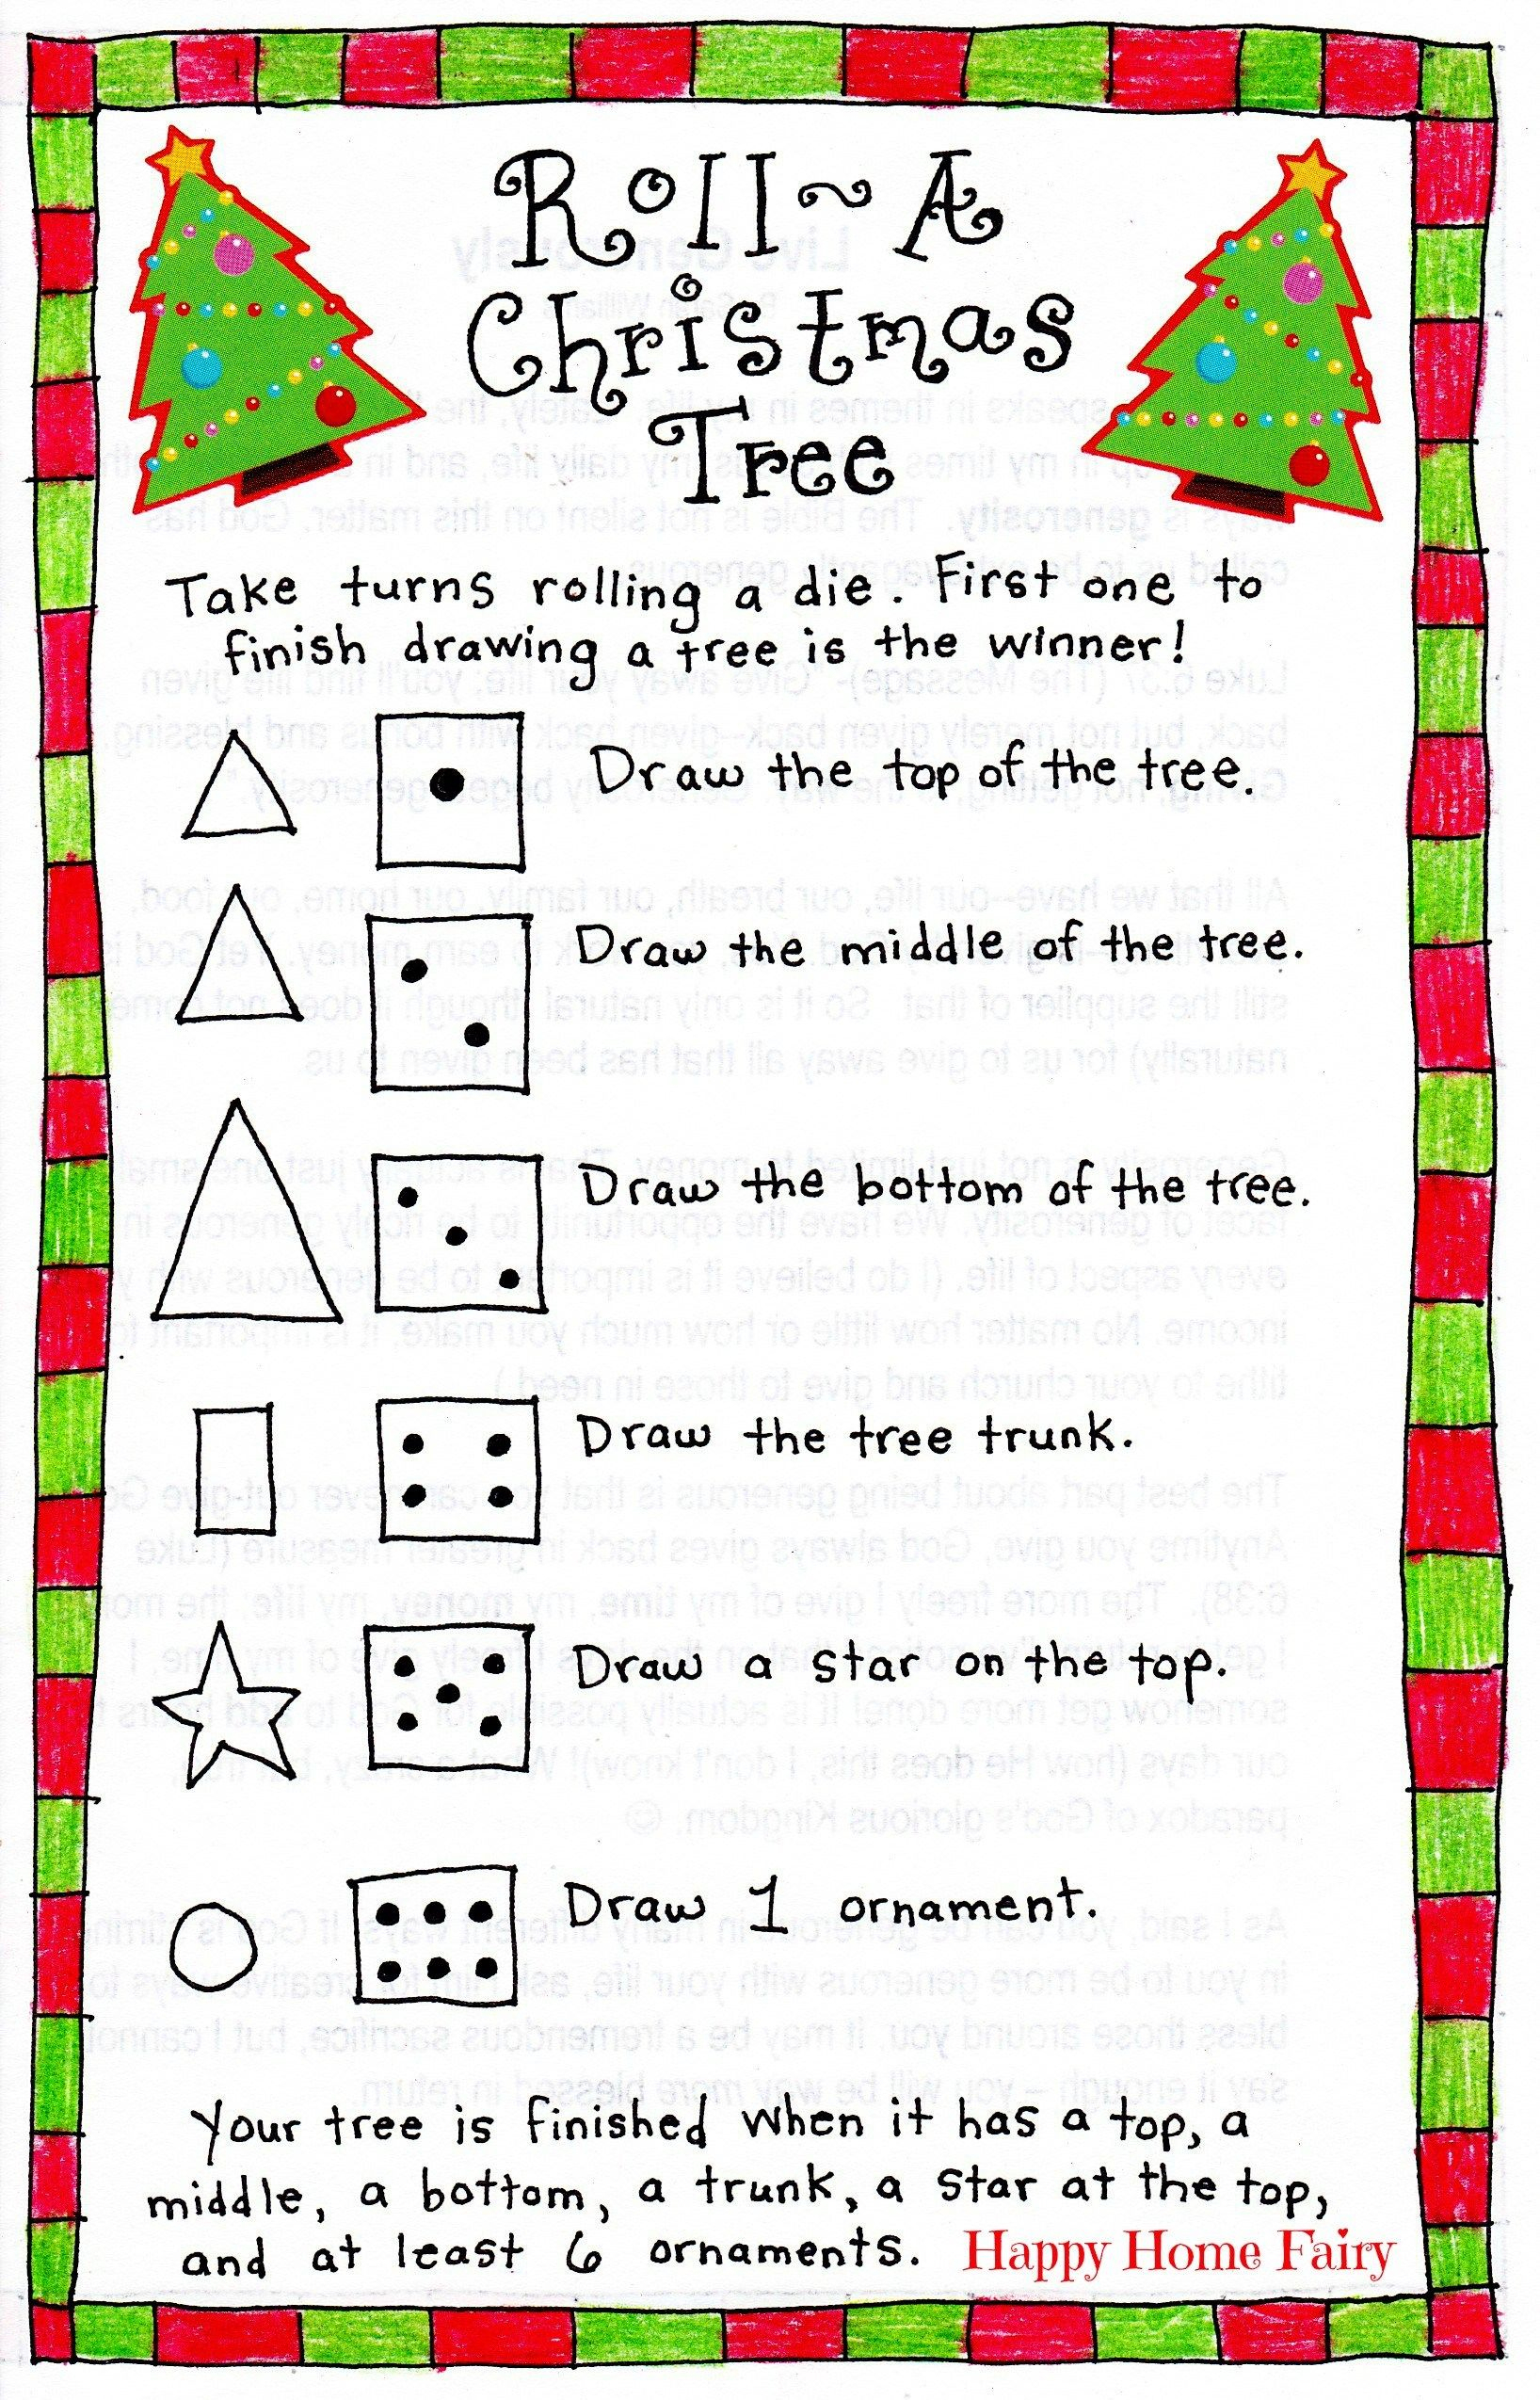 Roll-A-Christmas-Tree Game – Free Printable! | Christmas | Pinterest - Free Printable Christmas Puzzle Games